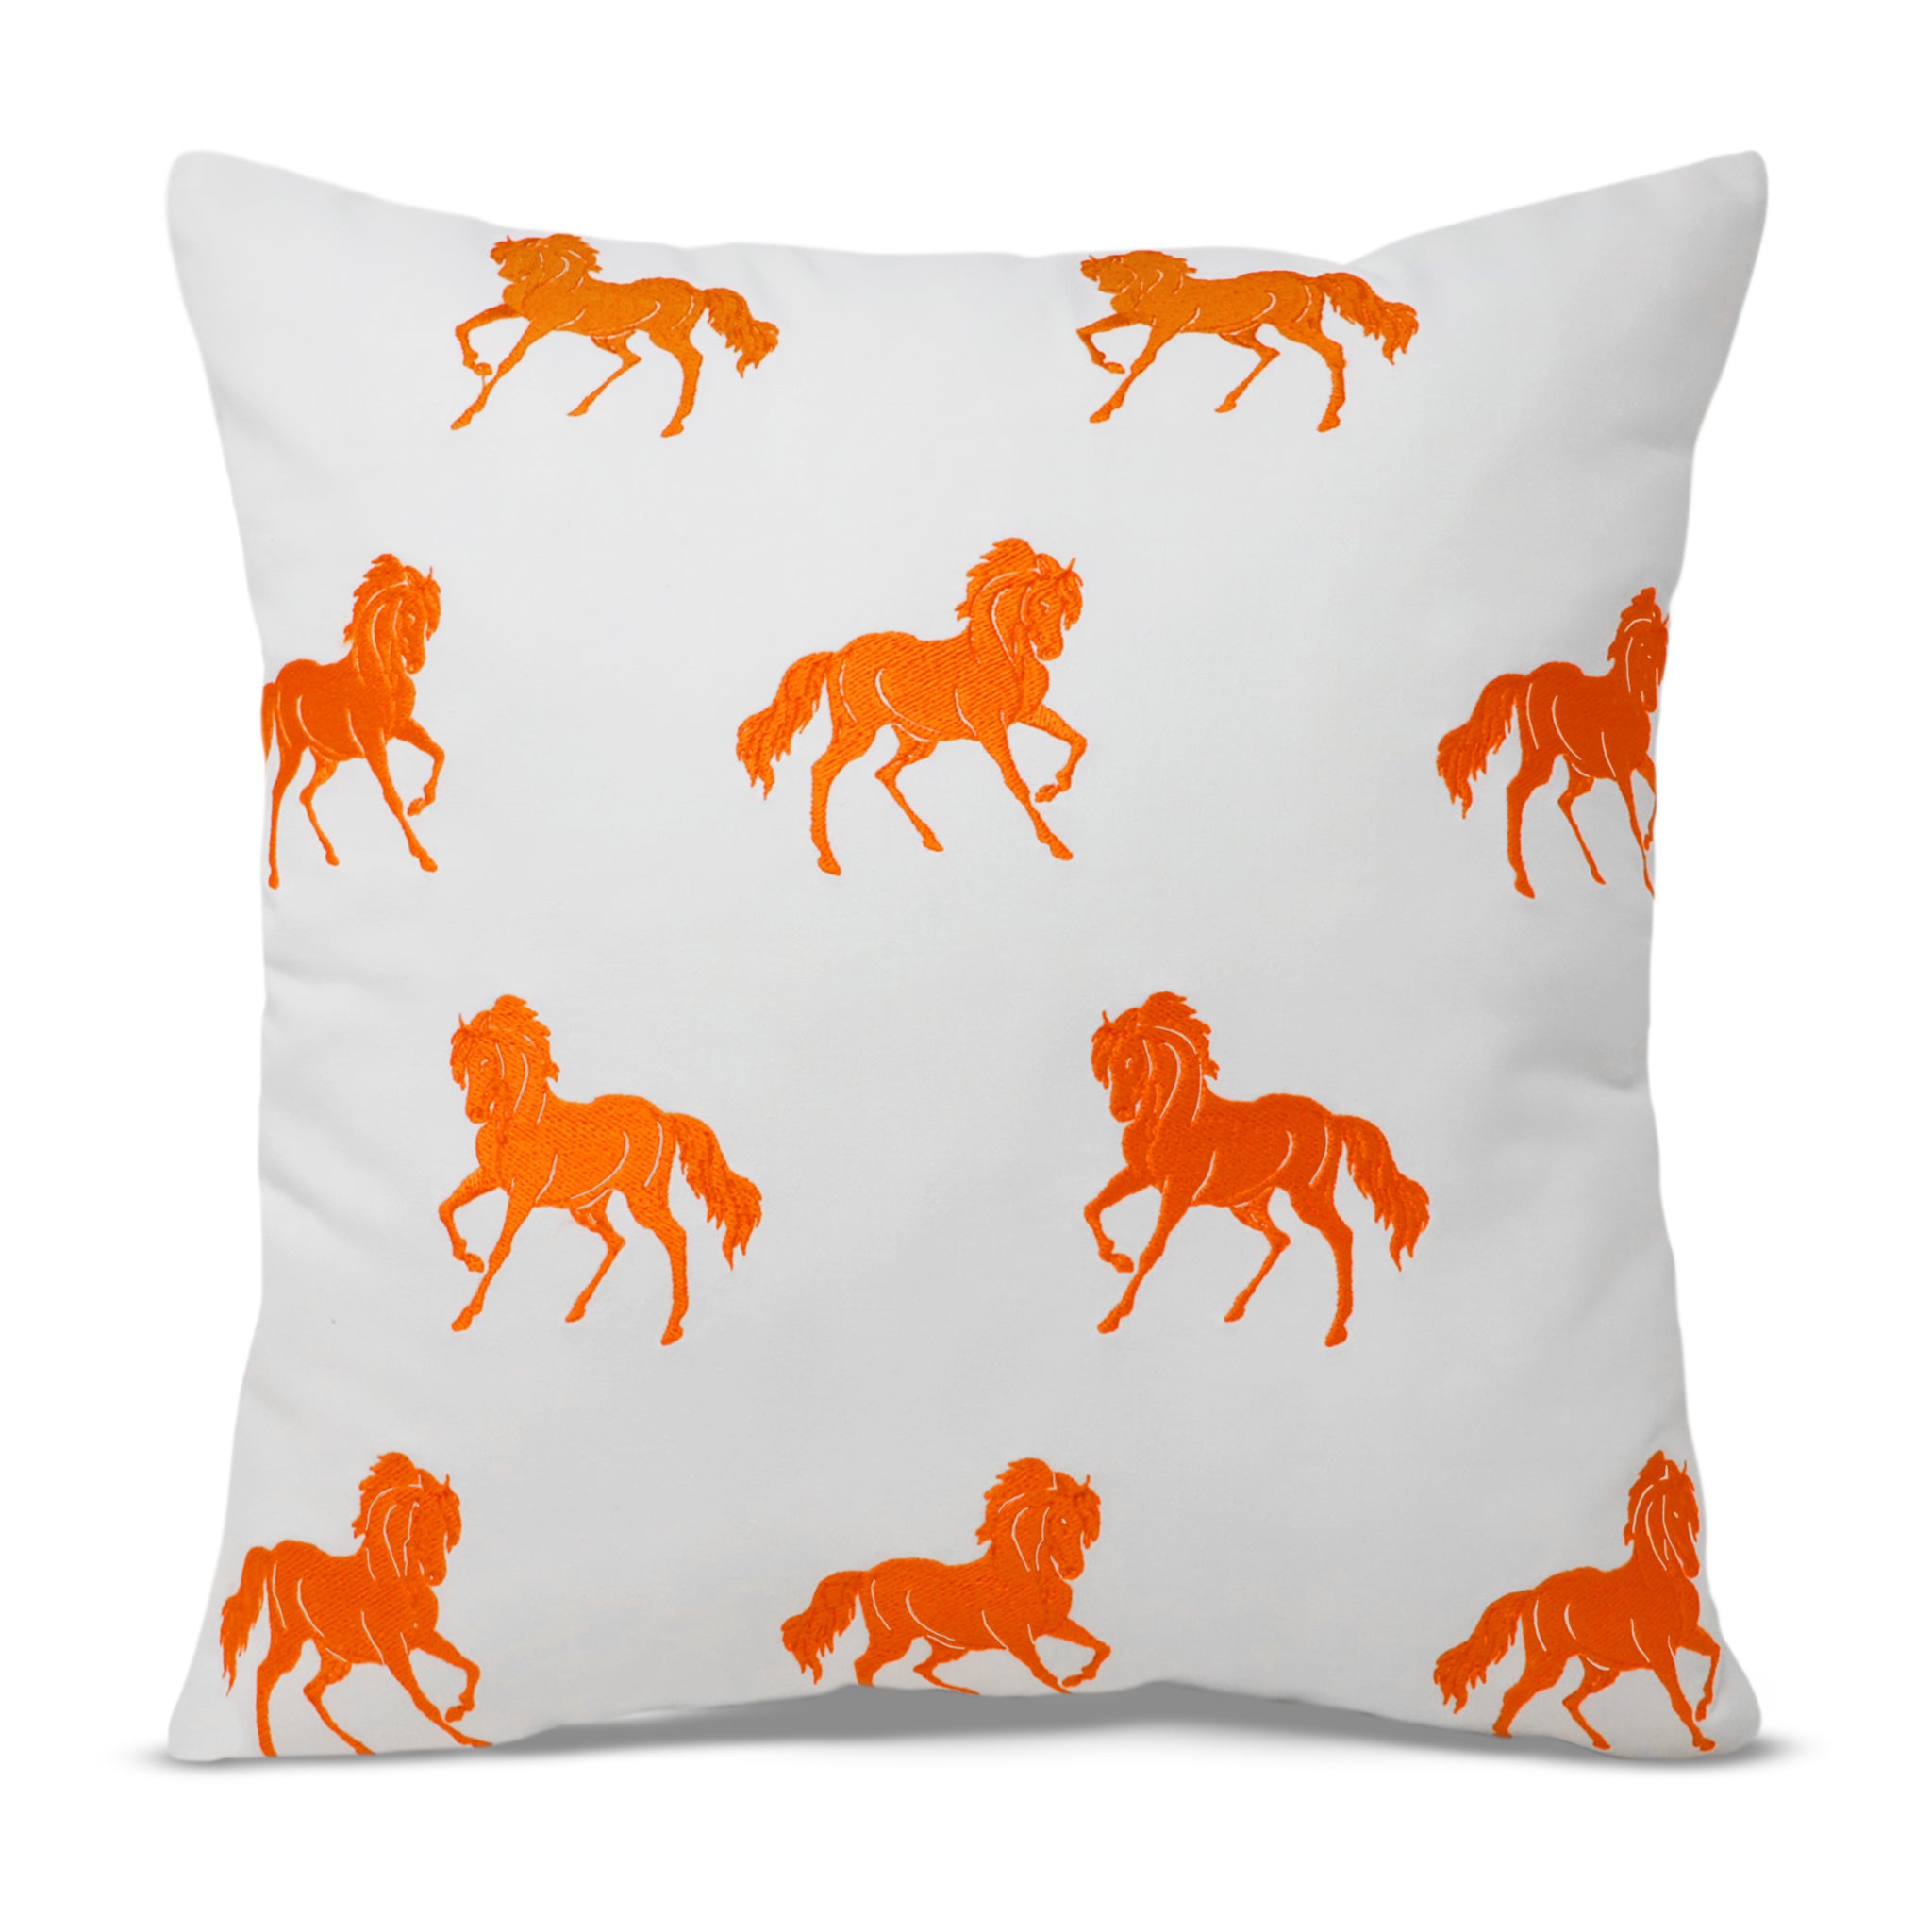 Suburban Horse Pillow Cover